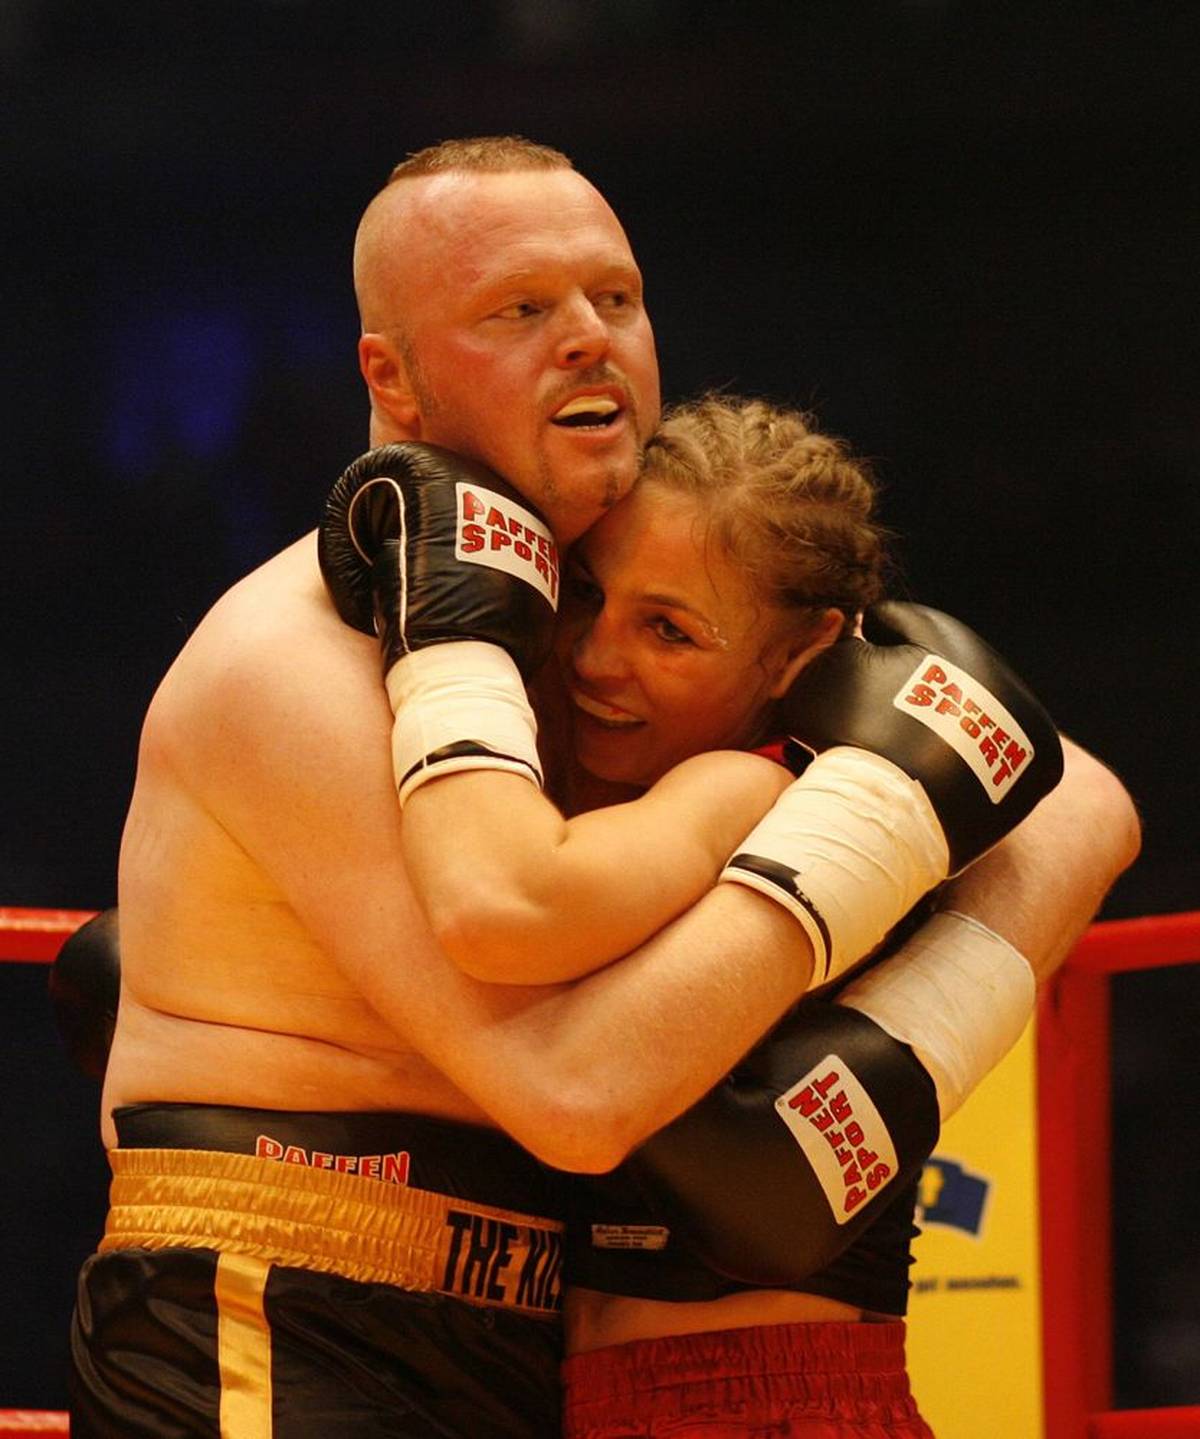 Stefan Raab en Regina Halmich tijdens hun tweede bokswedstrijd in Keulen in 2007